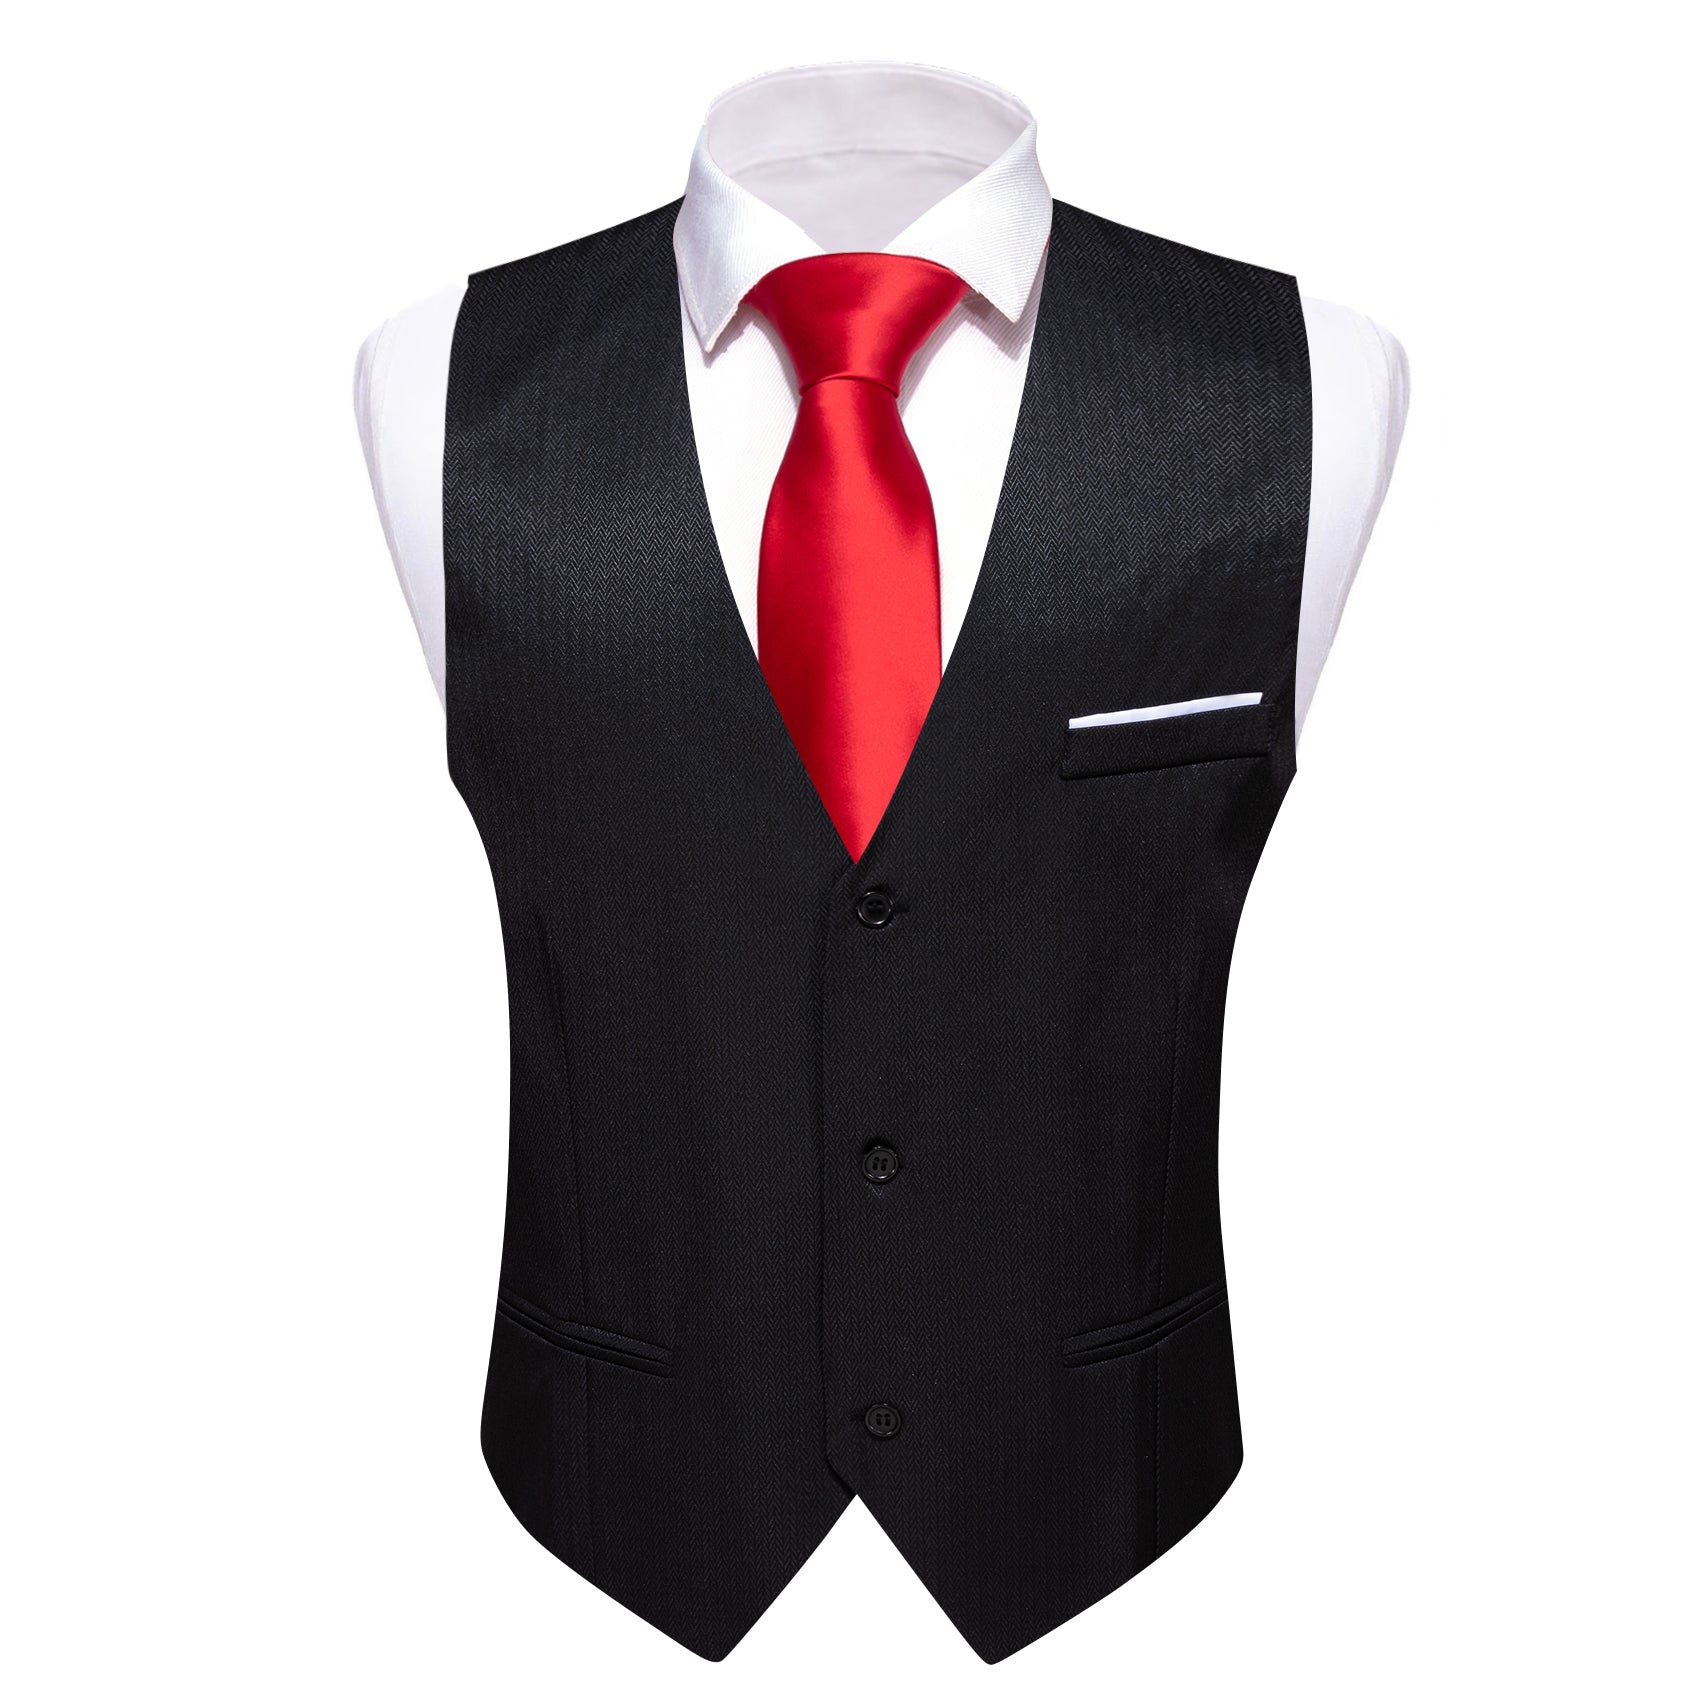 Men's Black Solid Vest Suit for Business